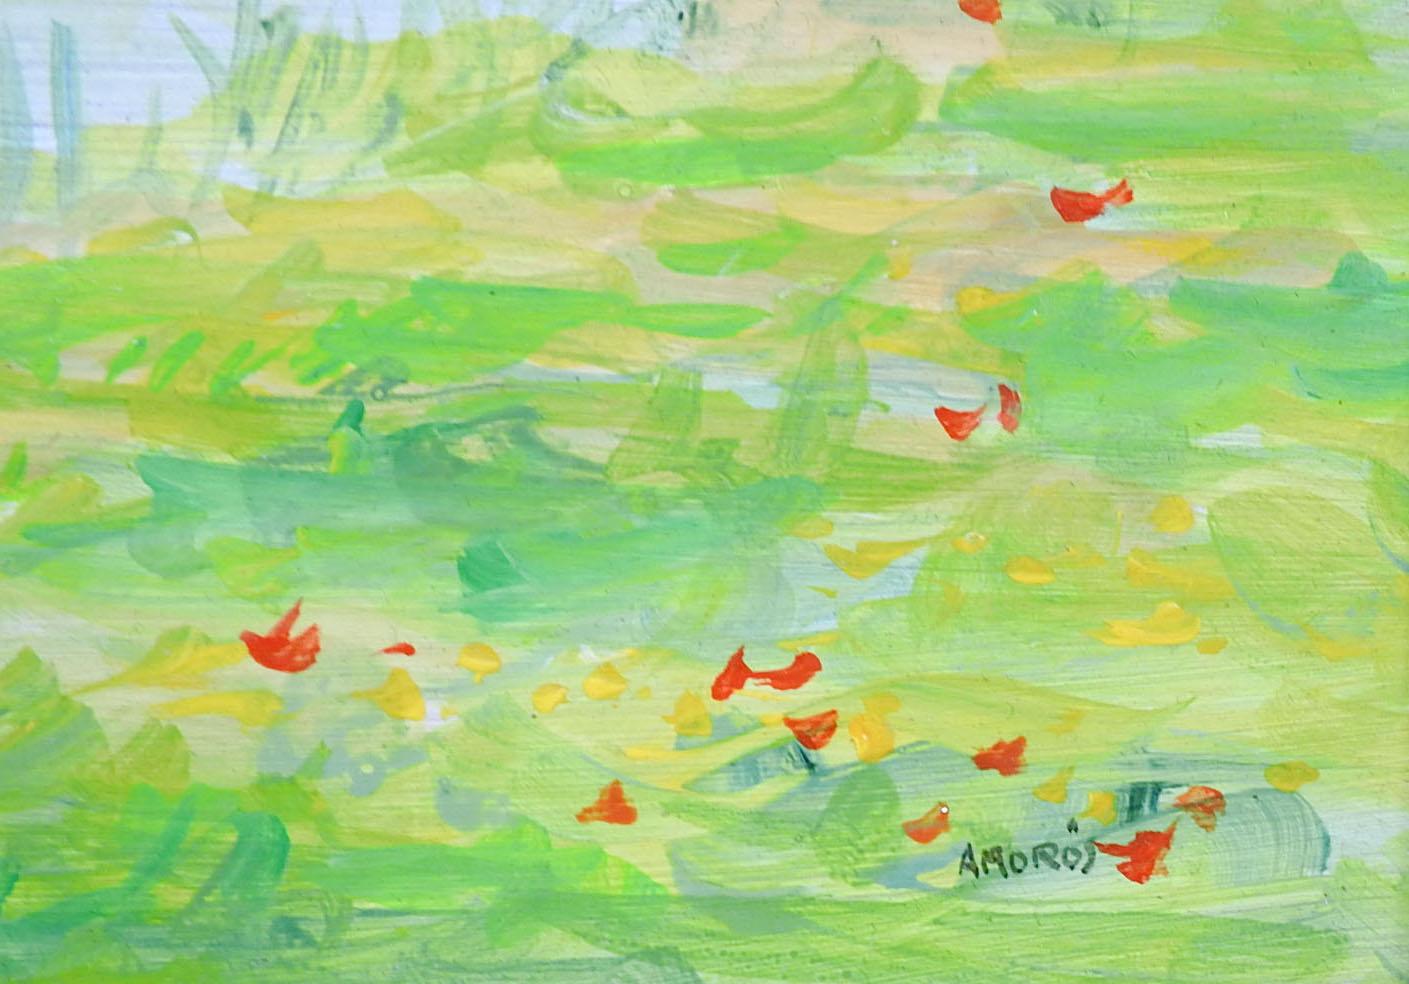 Französisch impressionistische Landschaft Öl auf Masonit Gemälde von Miguel Amoros (20. Jahrhundert) Frankreich. Blauer Himmel mit gelb und hellgrün mit verstreuten roten Wildblumen Landschaft.  Signiert unten rechts, weitere Angaben verso.